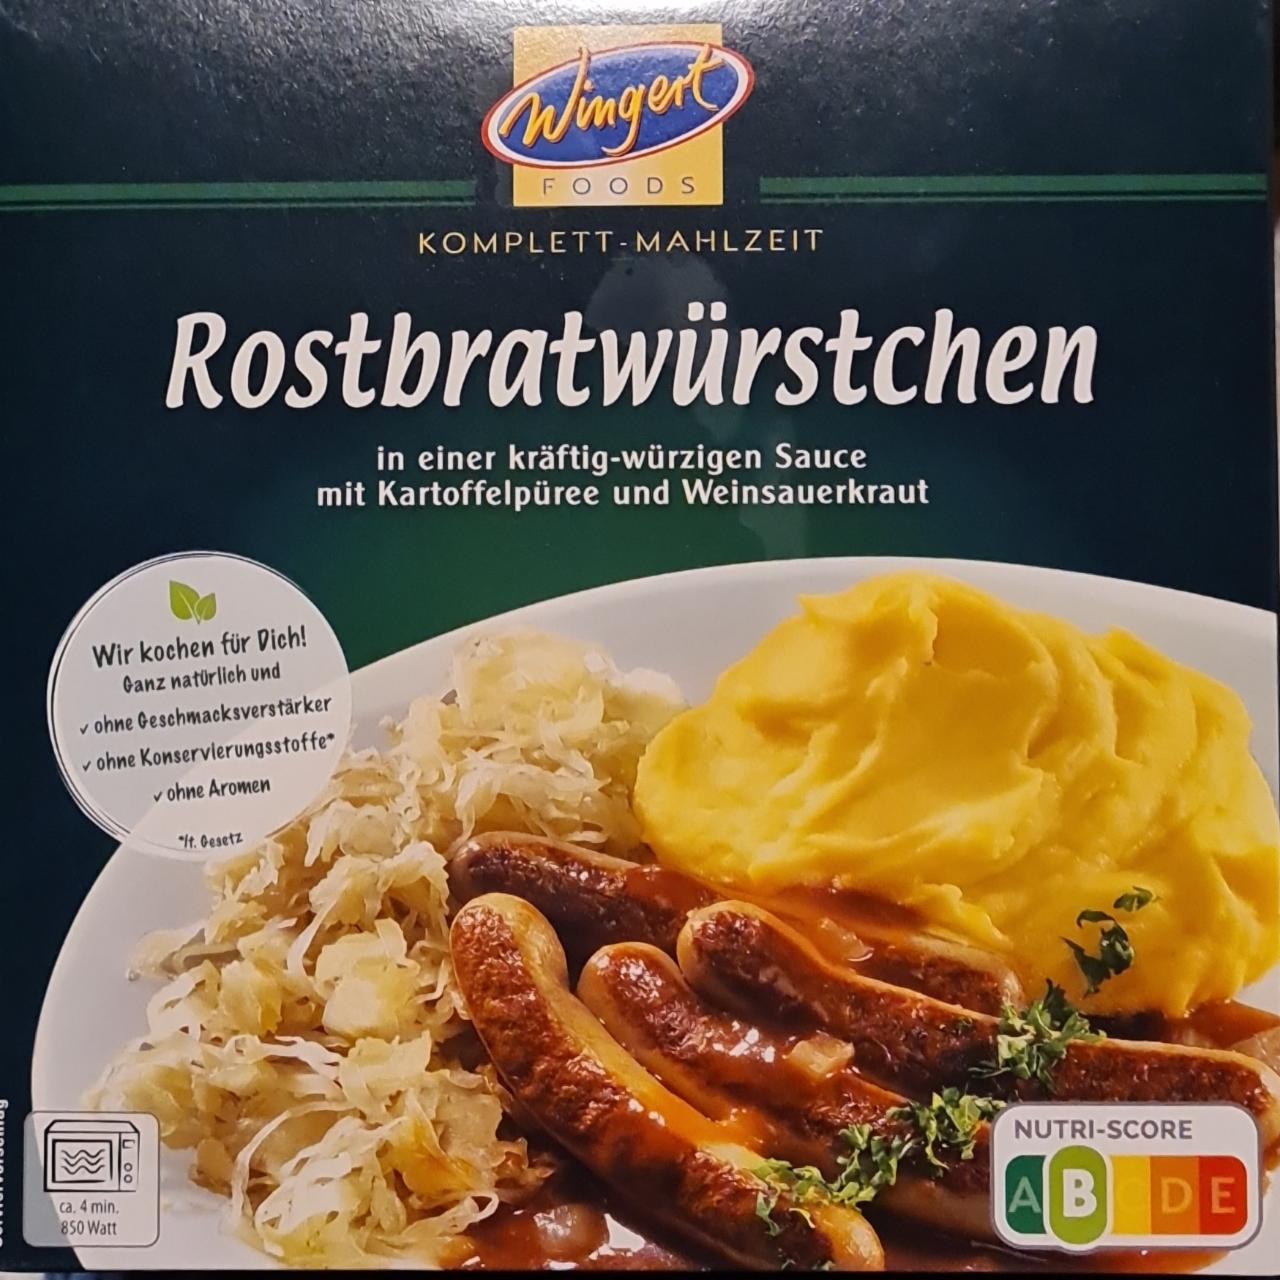 Zdjęcia - Rostbratwürstchen mit Kartoffelpüree und Weinsauerkraut Wingert